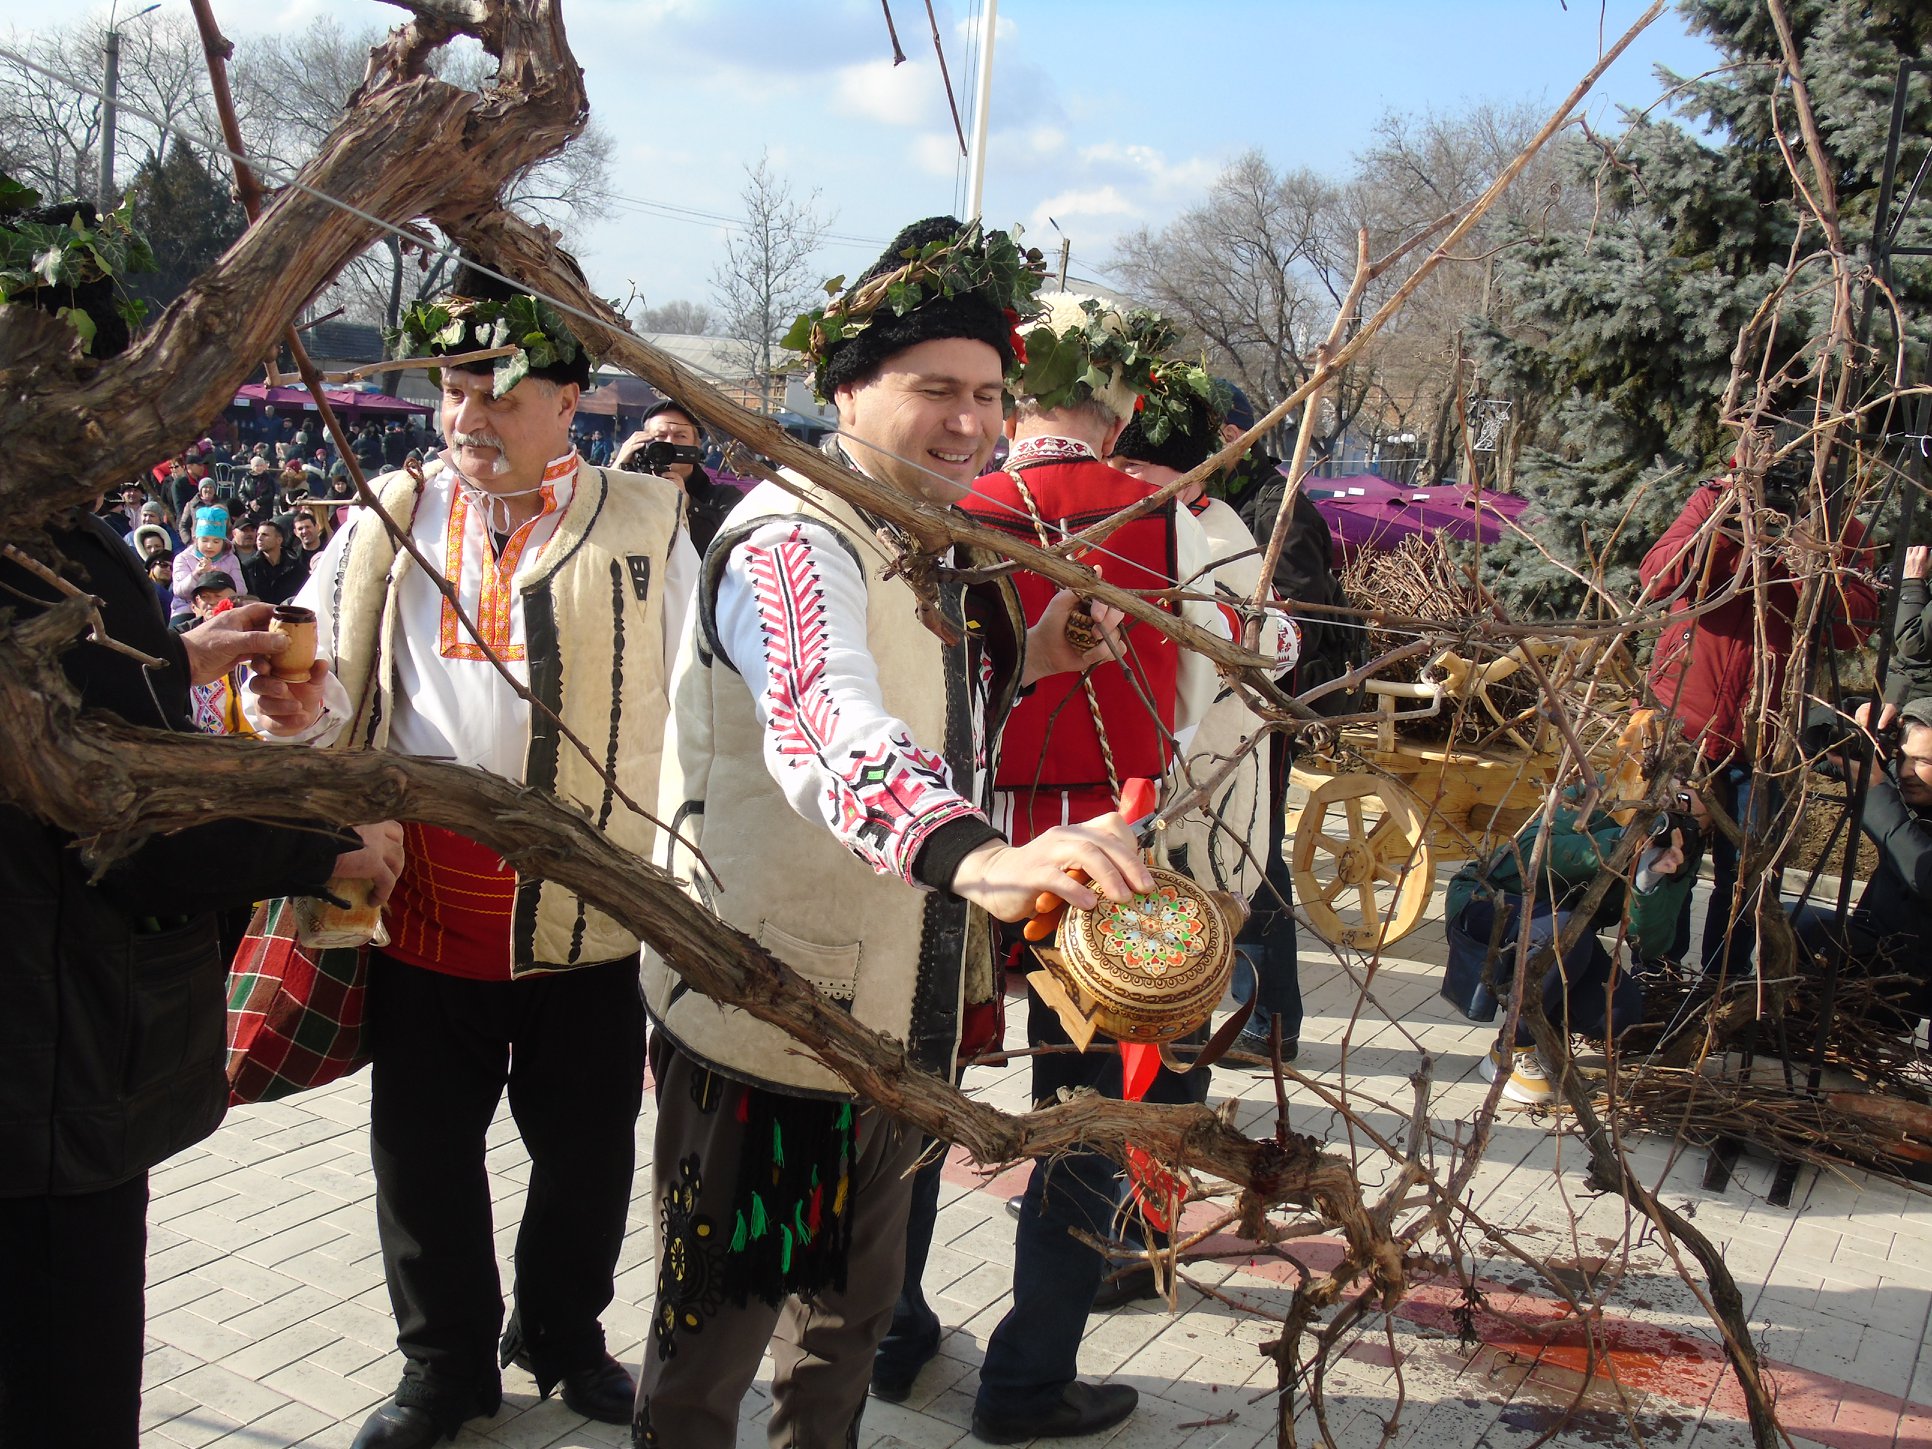 Праздники винодела в Криничном отмечают 14 февраля - в этот день проводят первую обрезку виноградной лозы. Фото: facebook.com/dmytrodimitrov